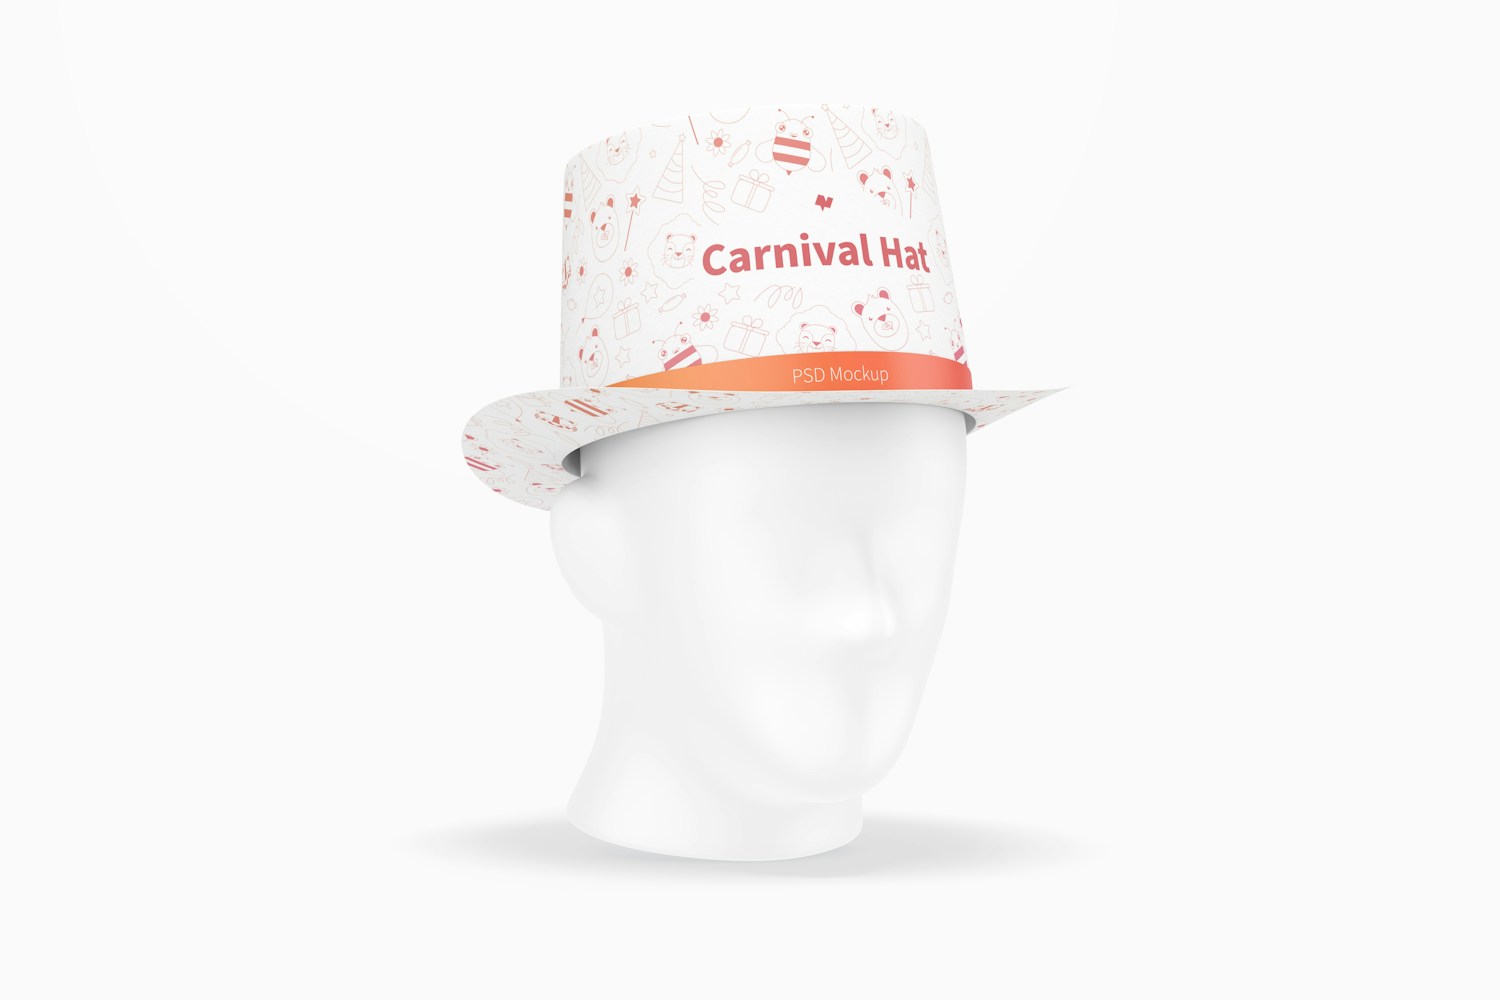 Carnival Hat Mockup